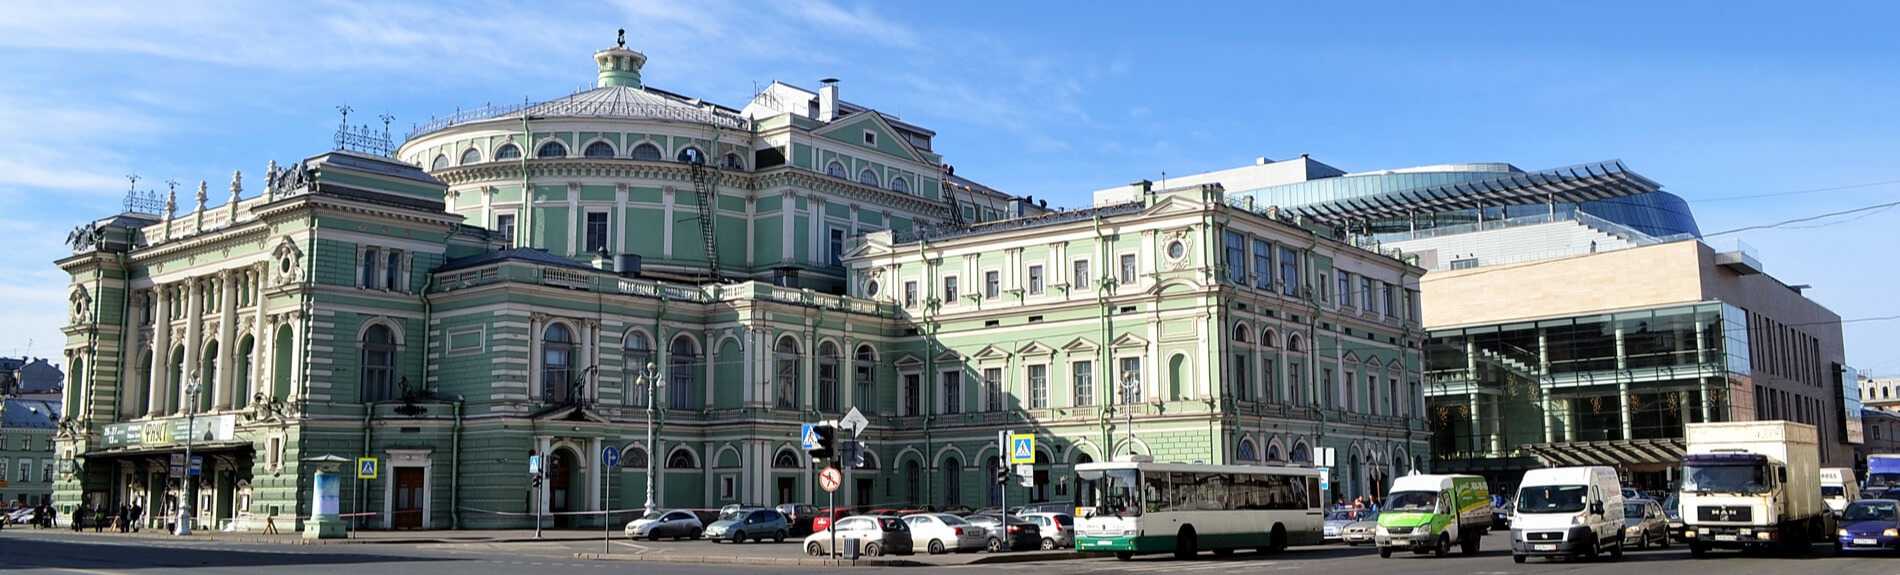 Мариинский театр в санкт-петербурге - история, фото, описание, как добраться, карта